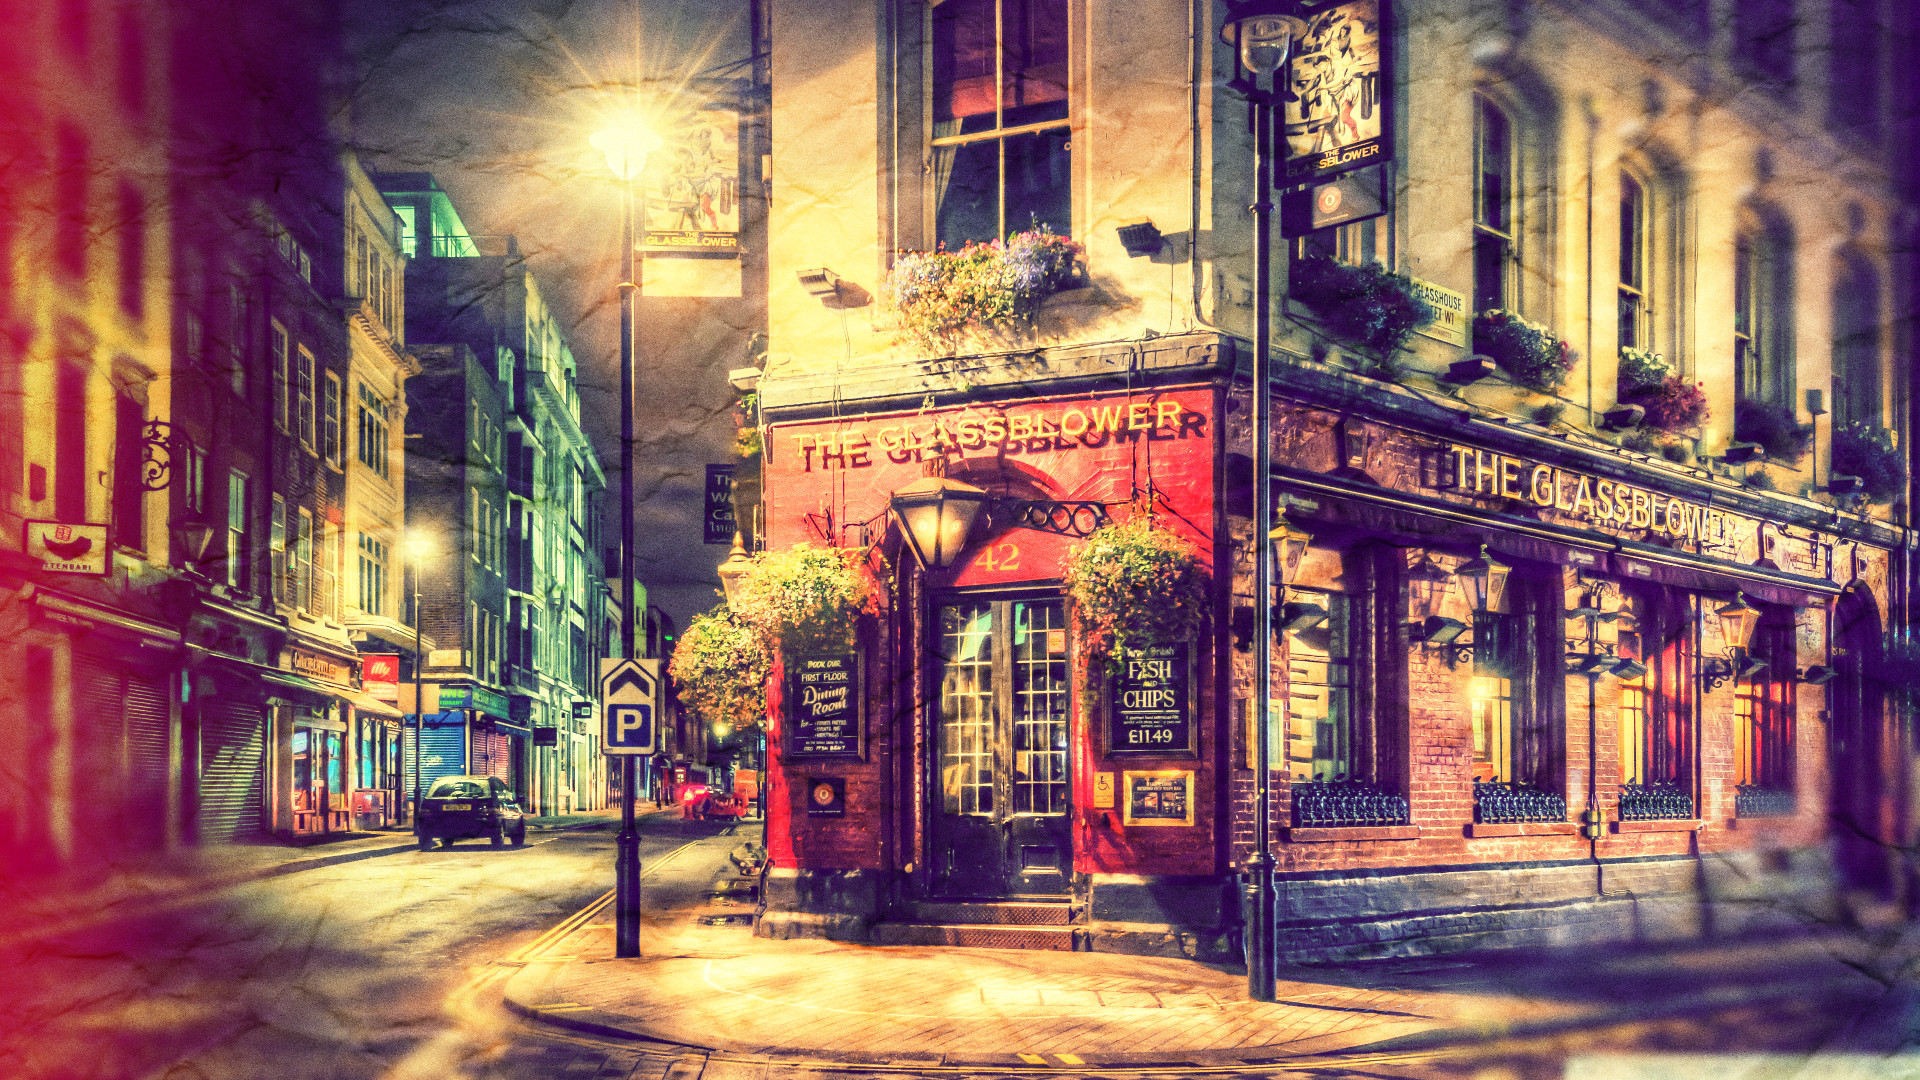 Brewer Pub London Vintage By Zeromask Brewer Pub London - London Hd - HD Wallpaper 